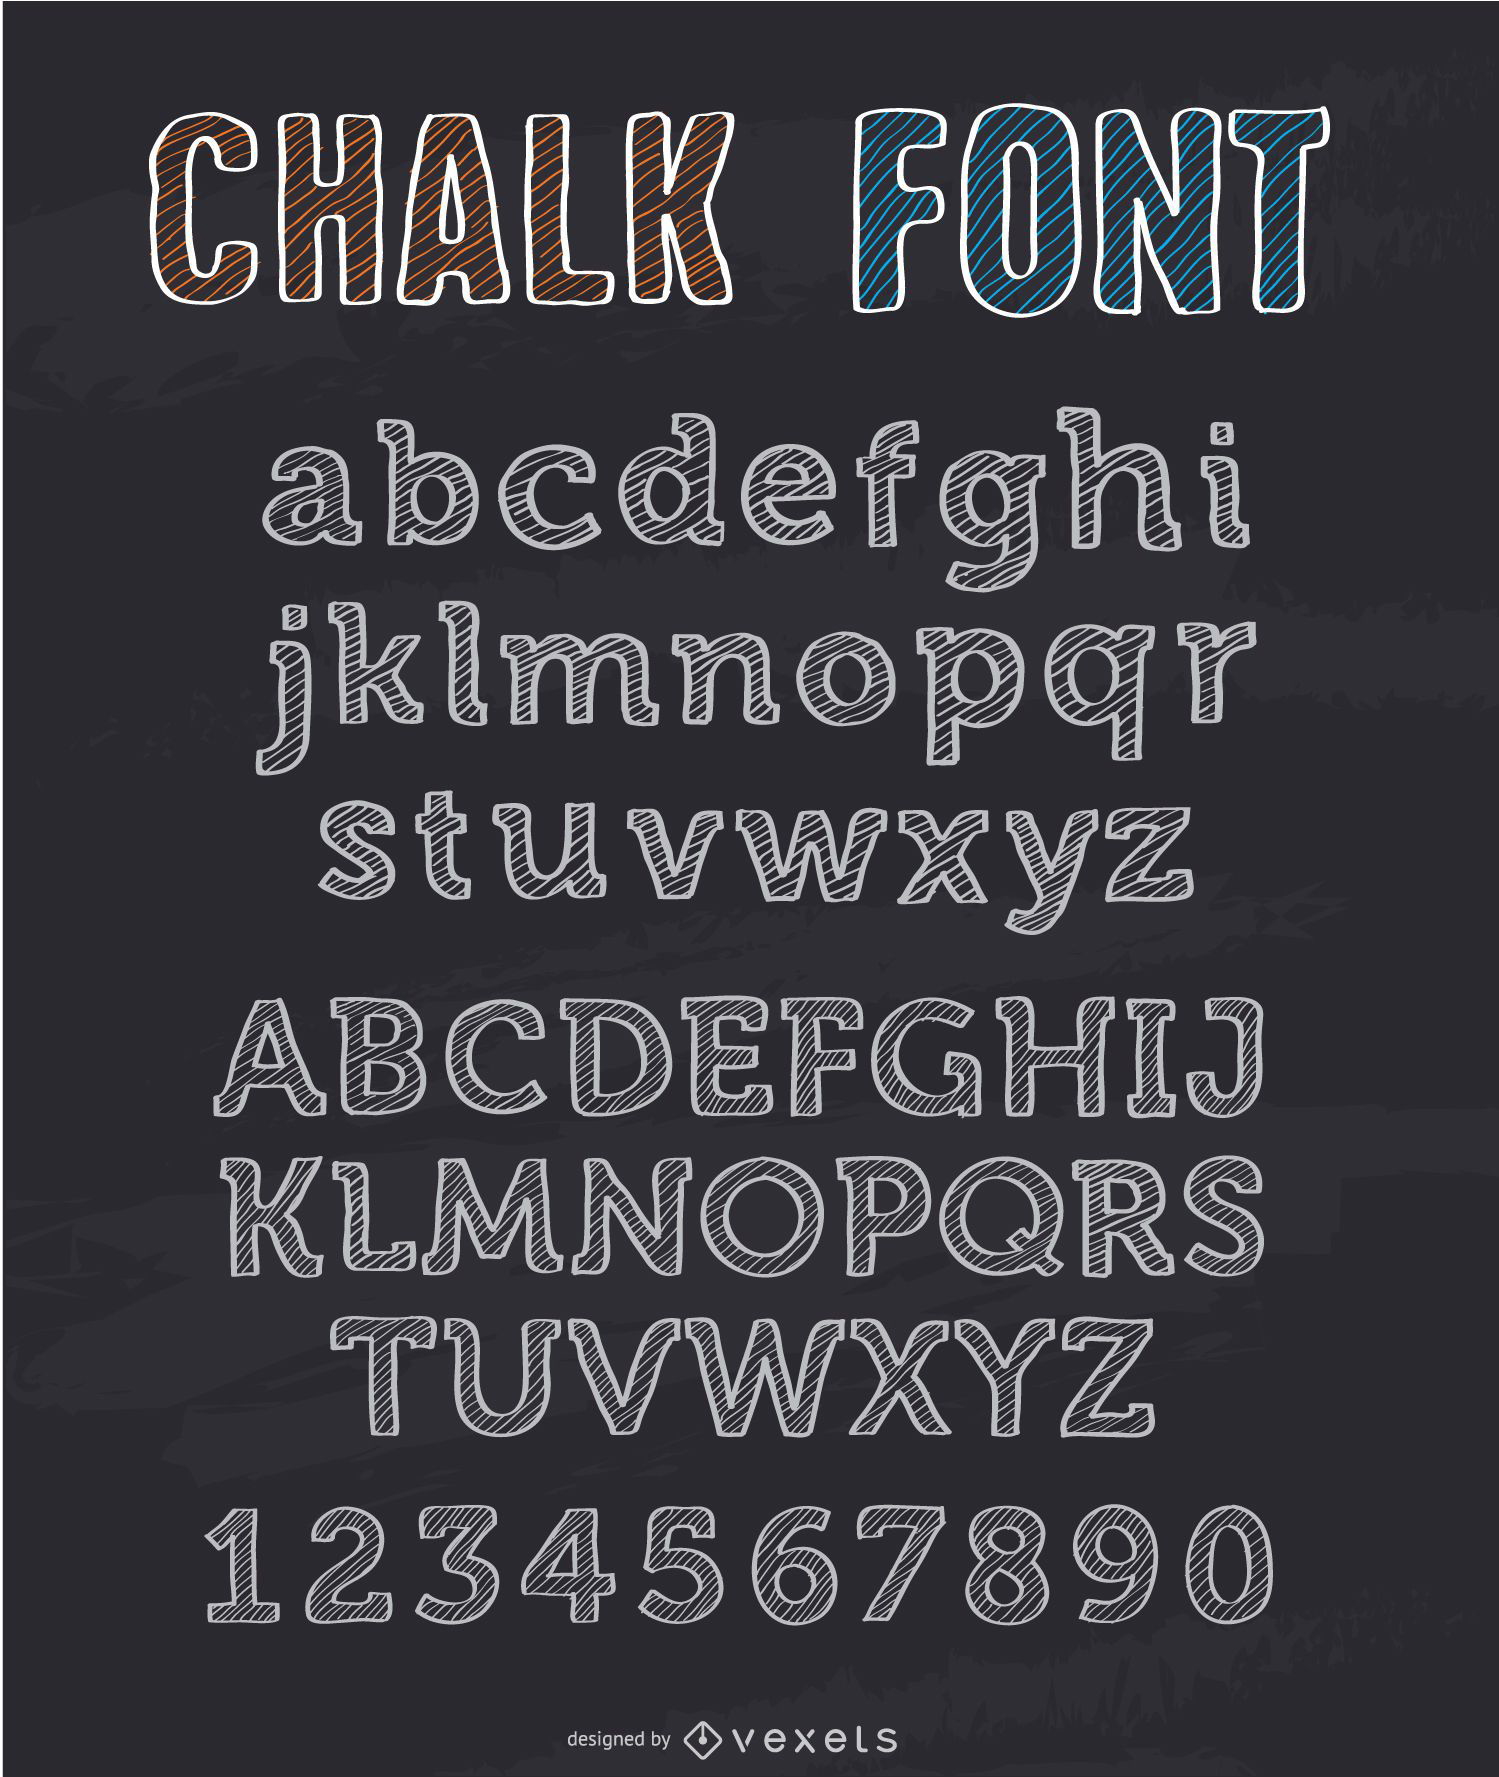 chalkboard art fonts alphabet